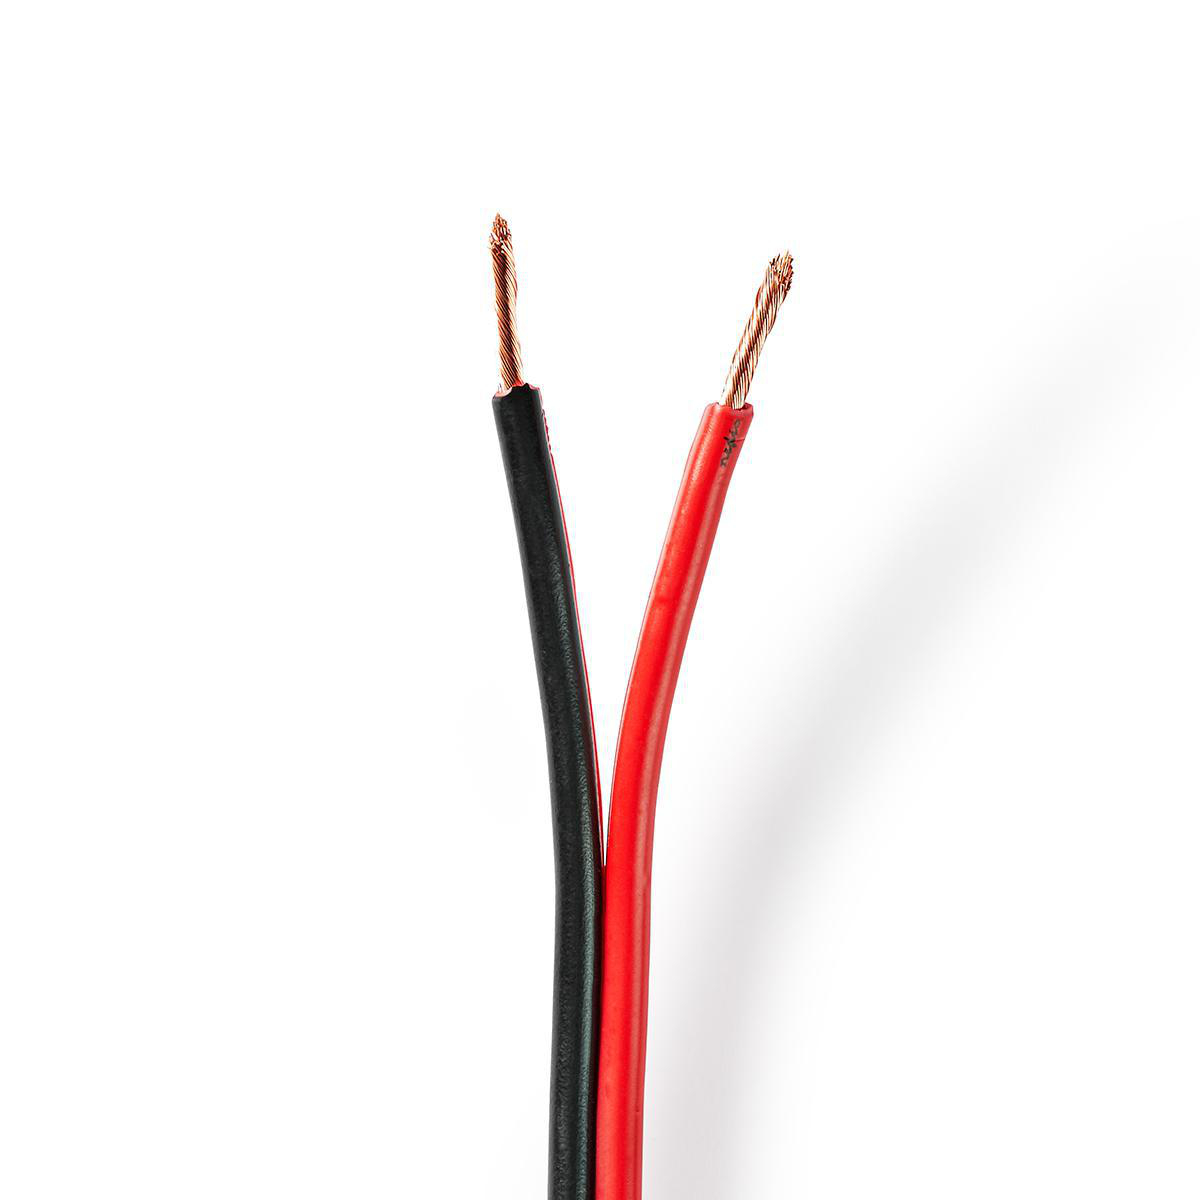 Nedis reproduktorový kabel 2 x 2.50 mm měděný, černý/červený vodič, 100 m cívka (CABR2500BK1000)